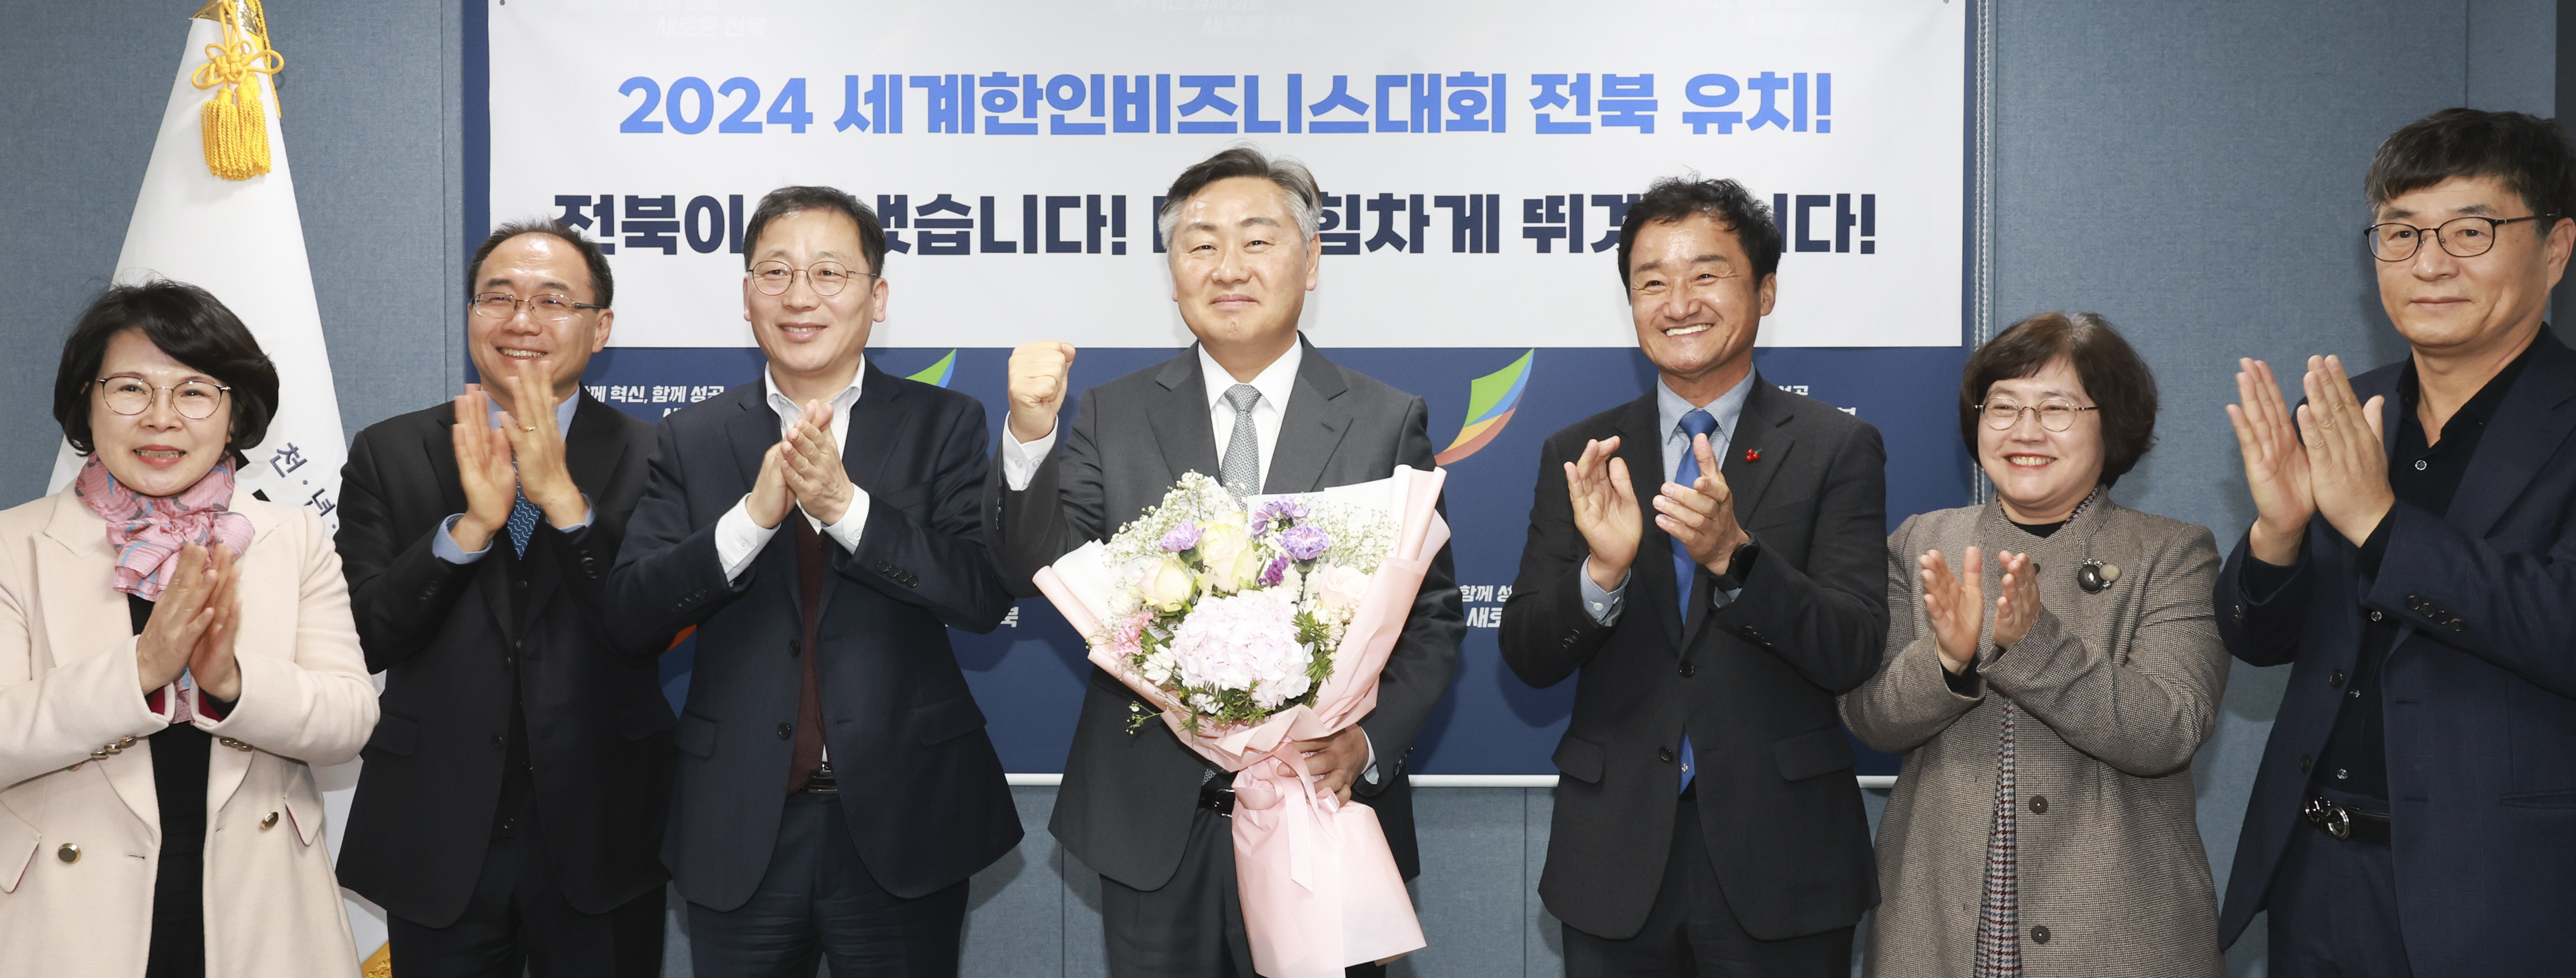 全罗北道-全州申办2024年世界韩人商务大会 image(1)